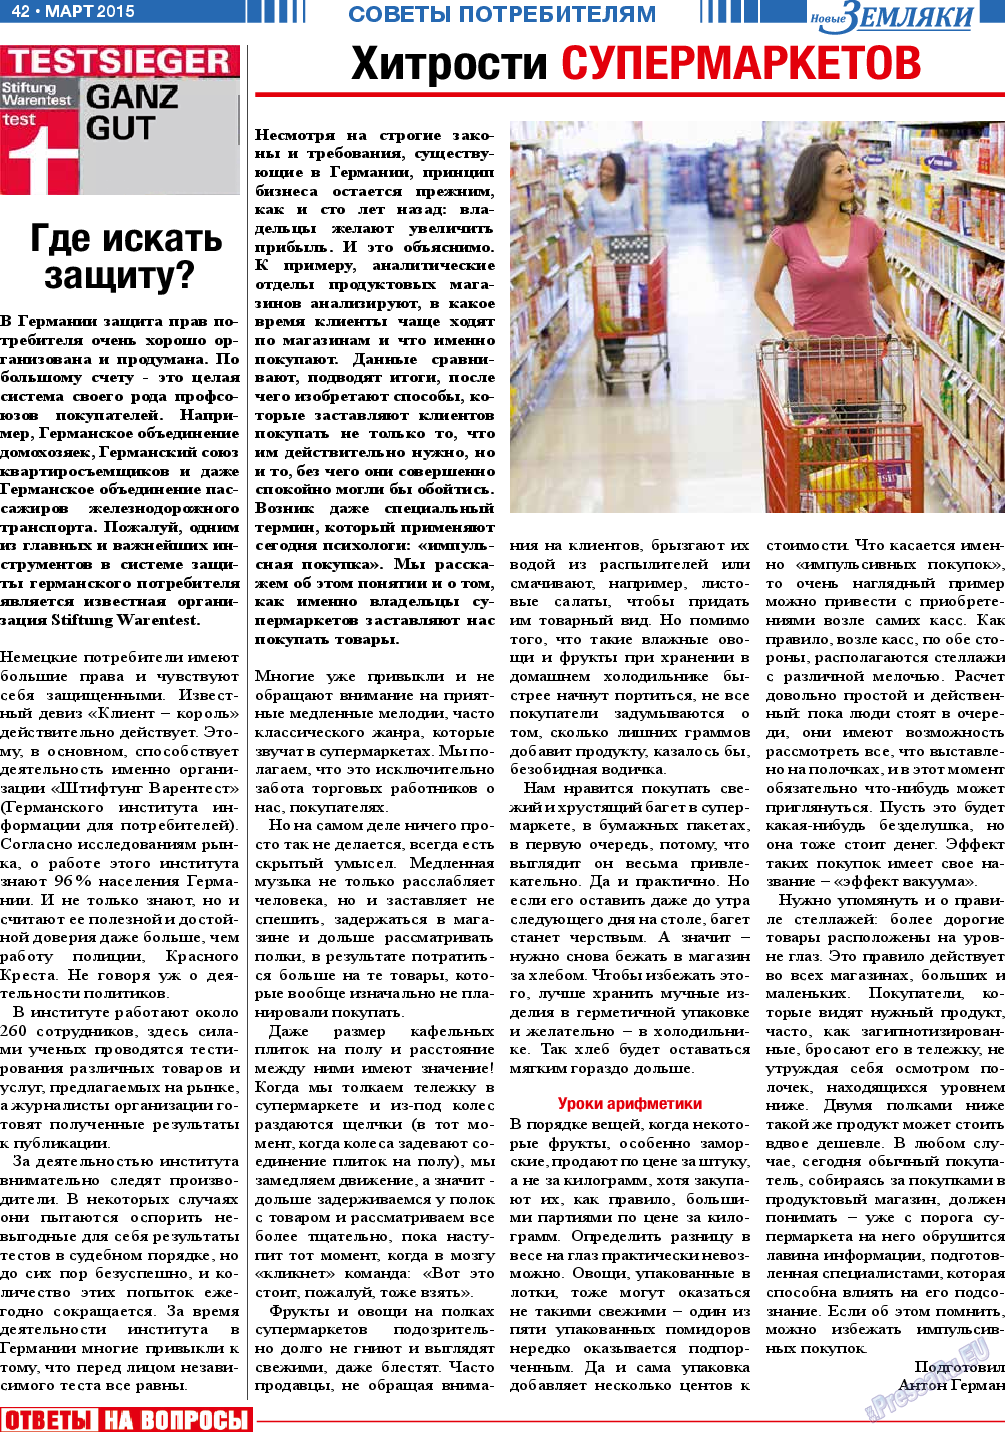 Новые Земляки, газета. 2015 №3 стр.42